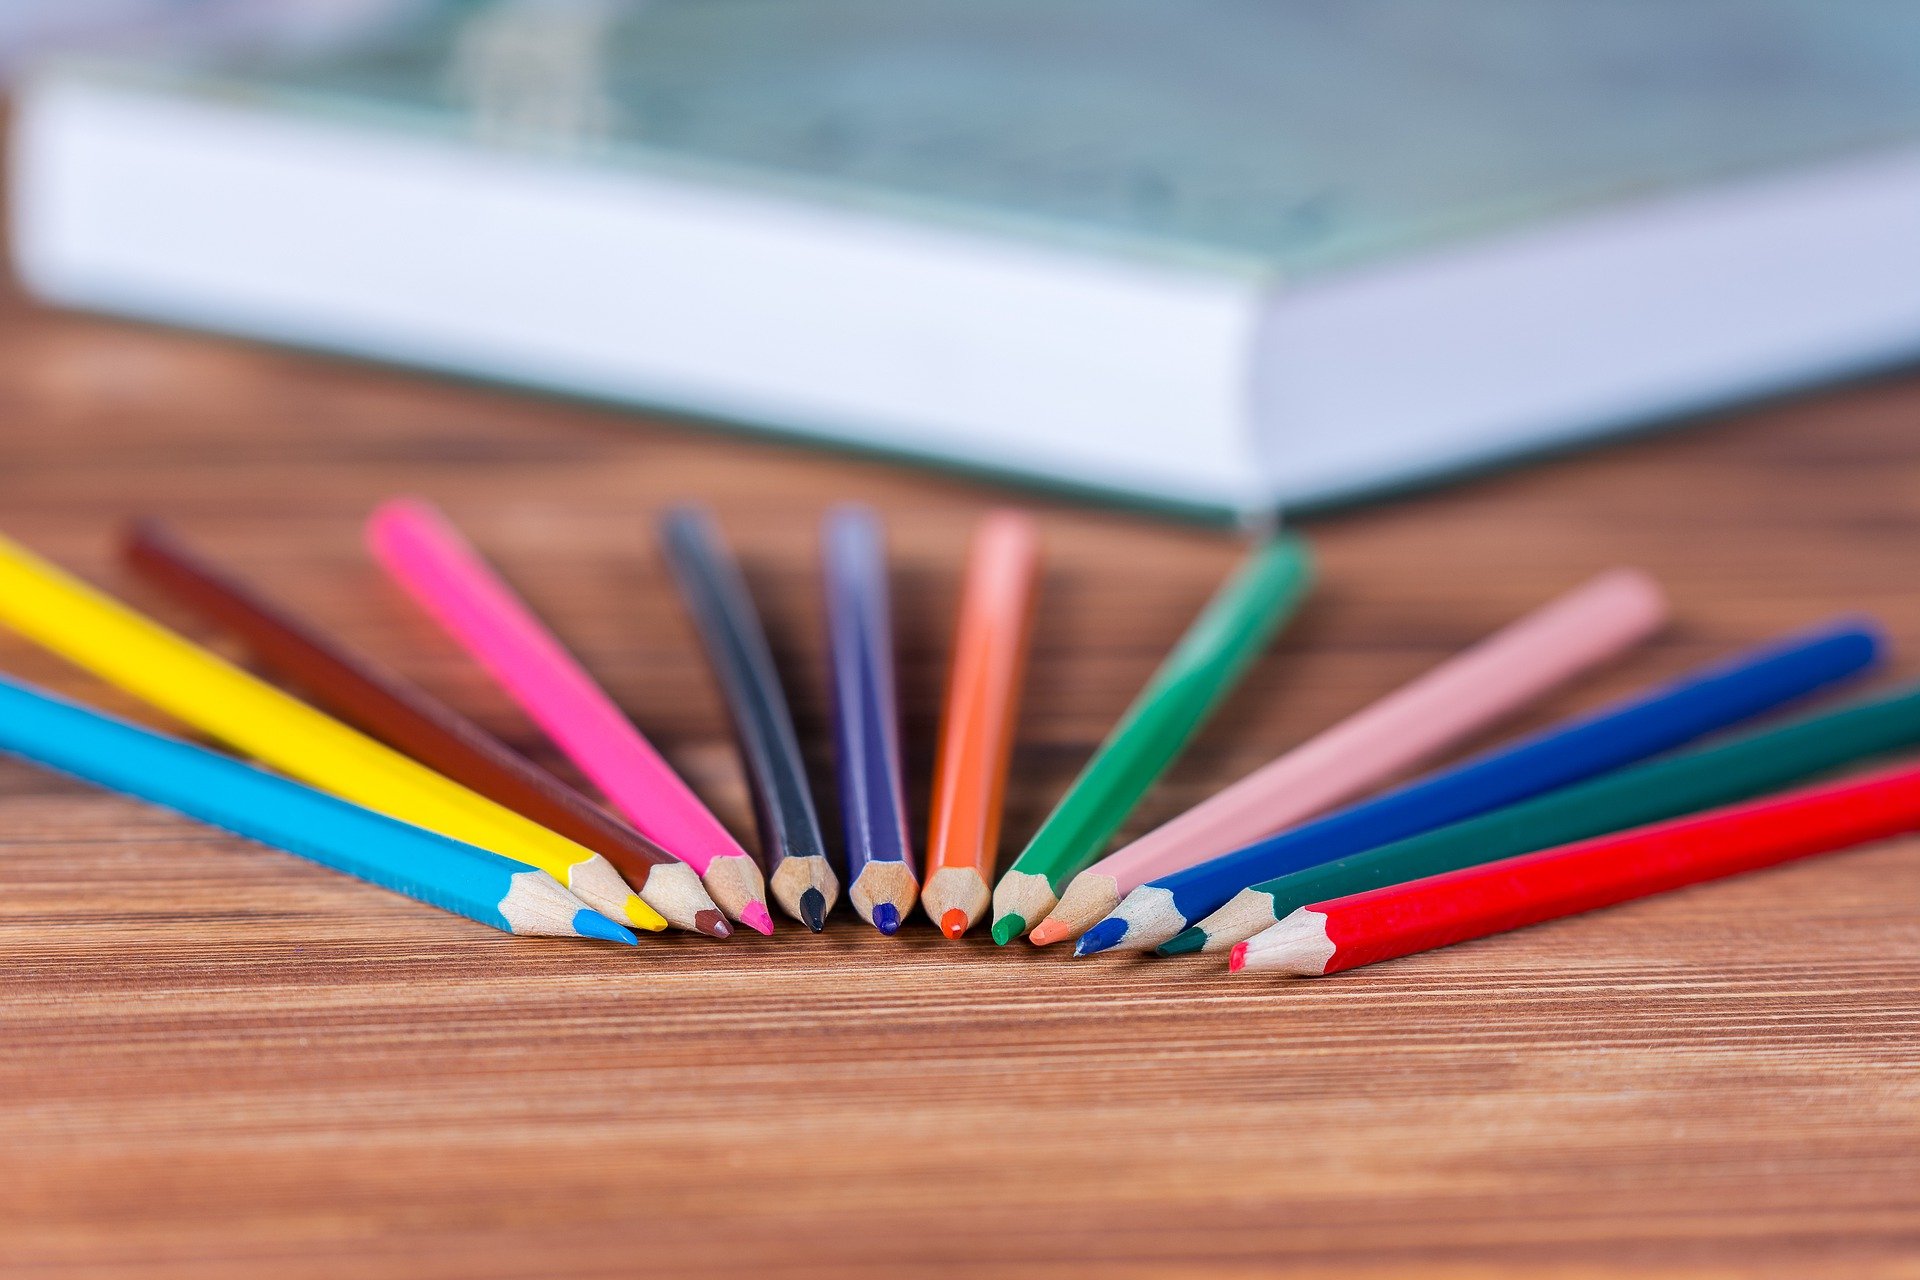 На столе лежат две коробки с карандашами. Карандаши цветные. Карандаши на столе. Цветные карандаши на столе. Бумага и цветные карандаши.